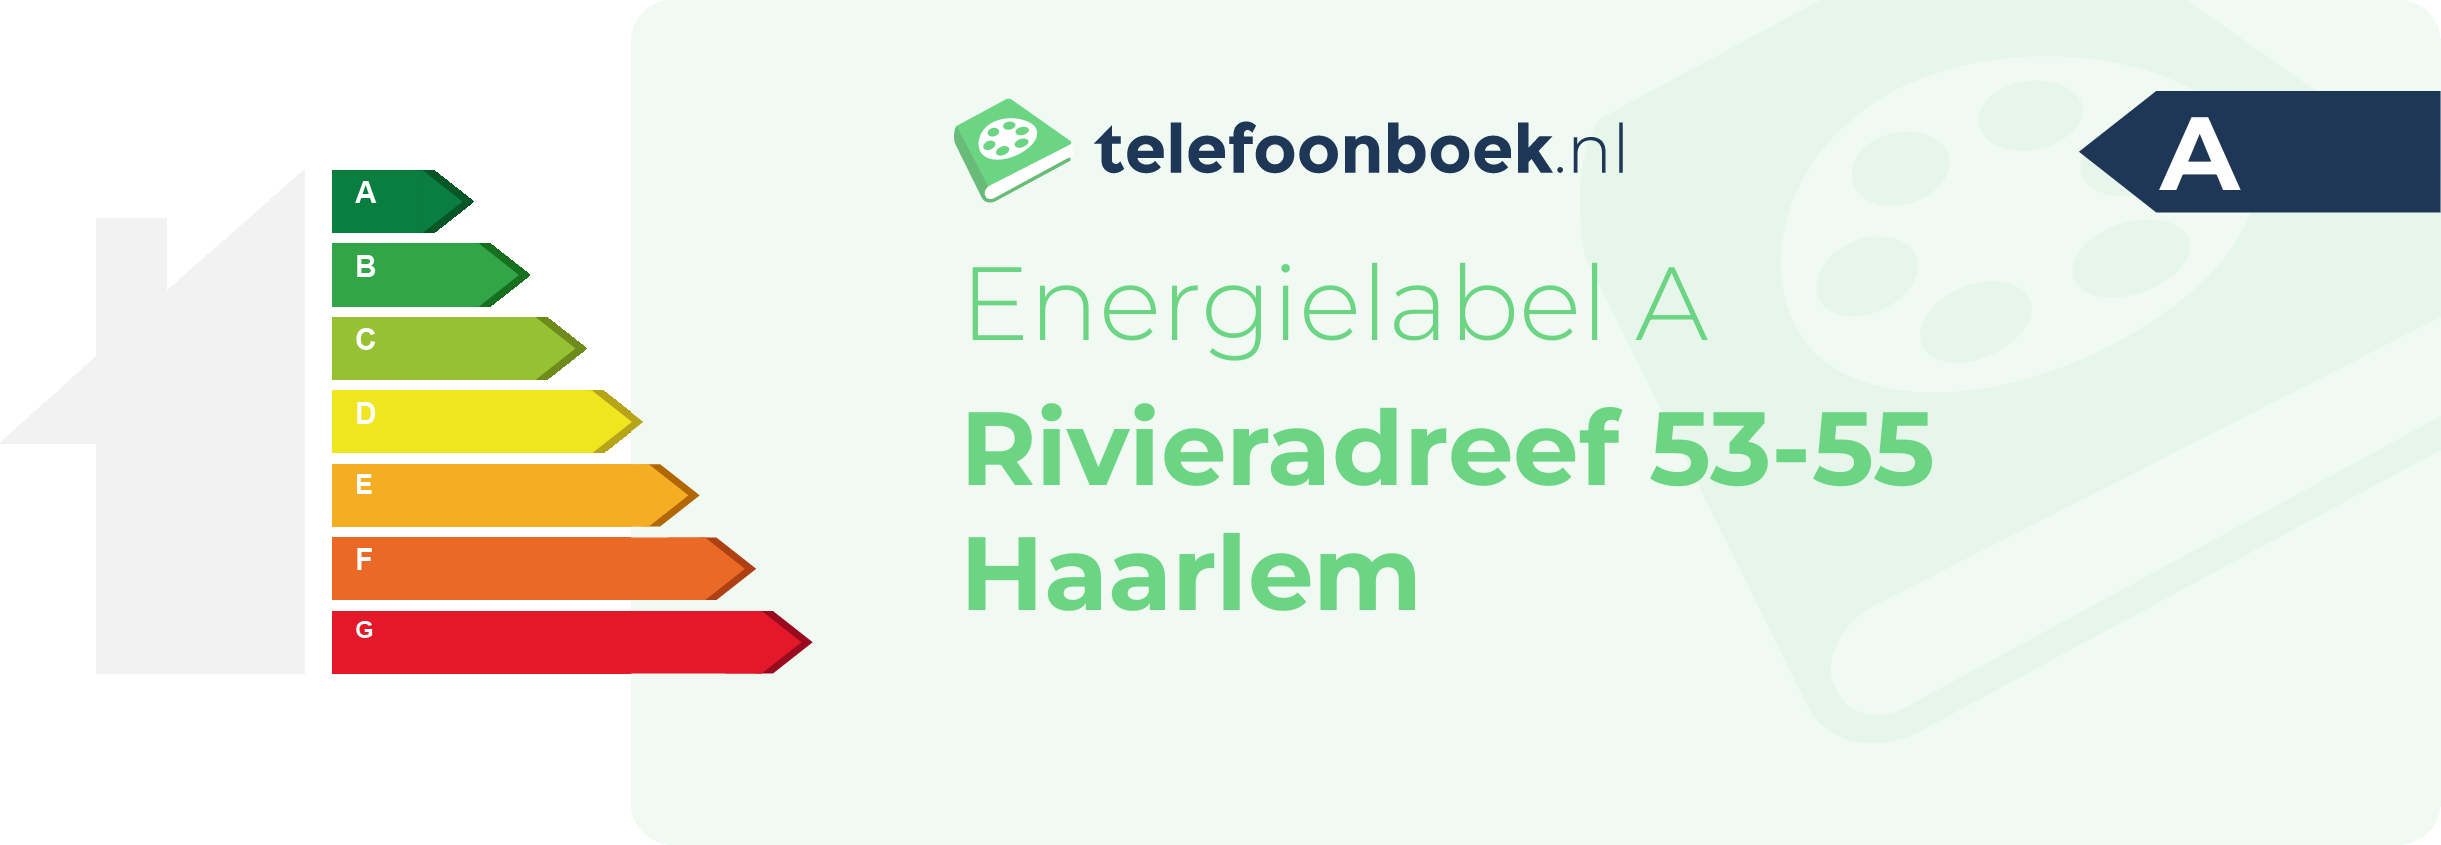 Energielabel Rivieradreef 53-55 Haarlem